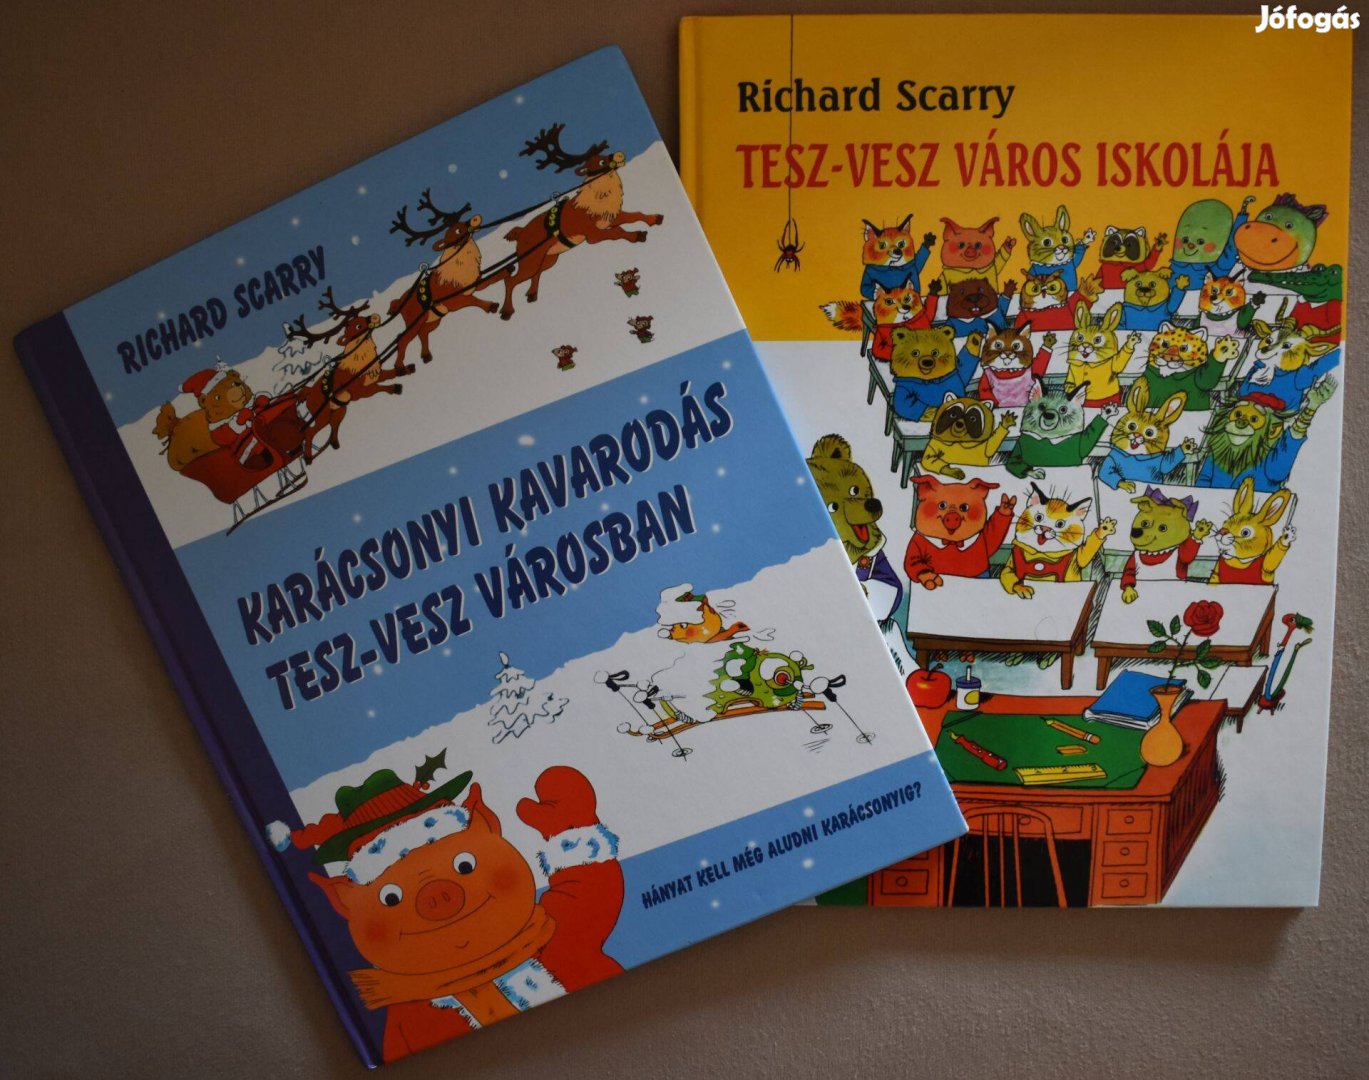 Richard Scarry: Karácsonyi kavarodás Tesz-vesz Városban, iskolája